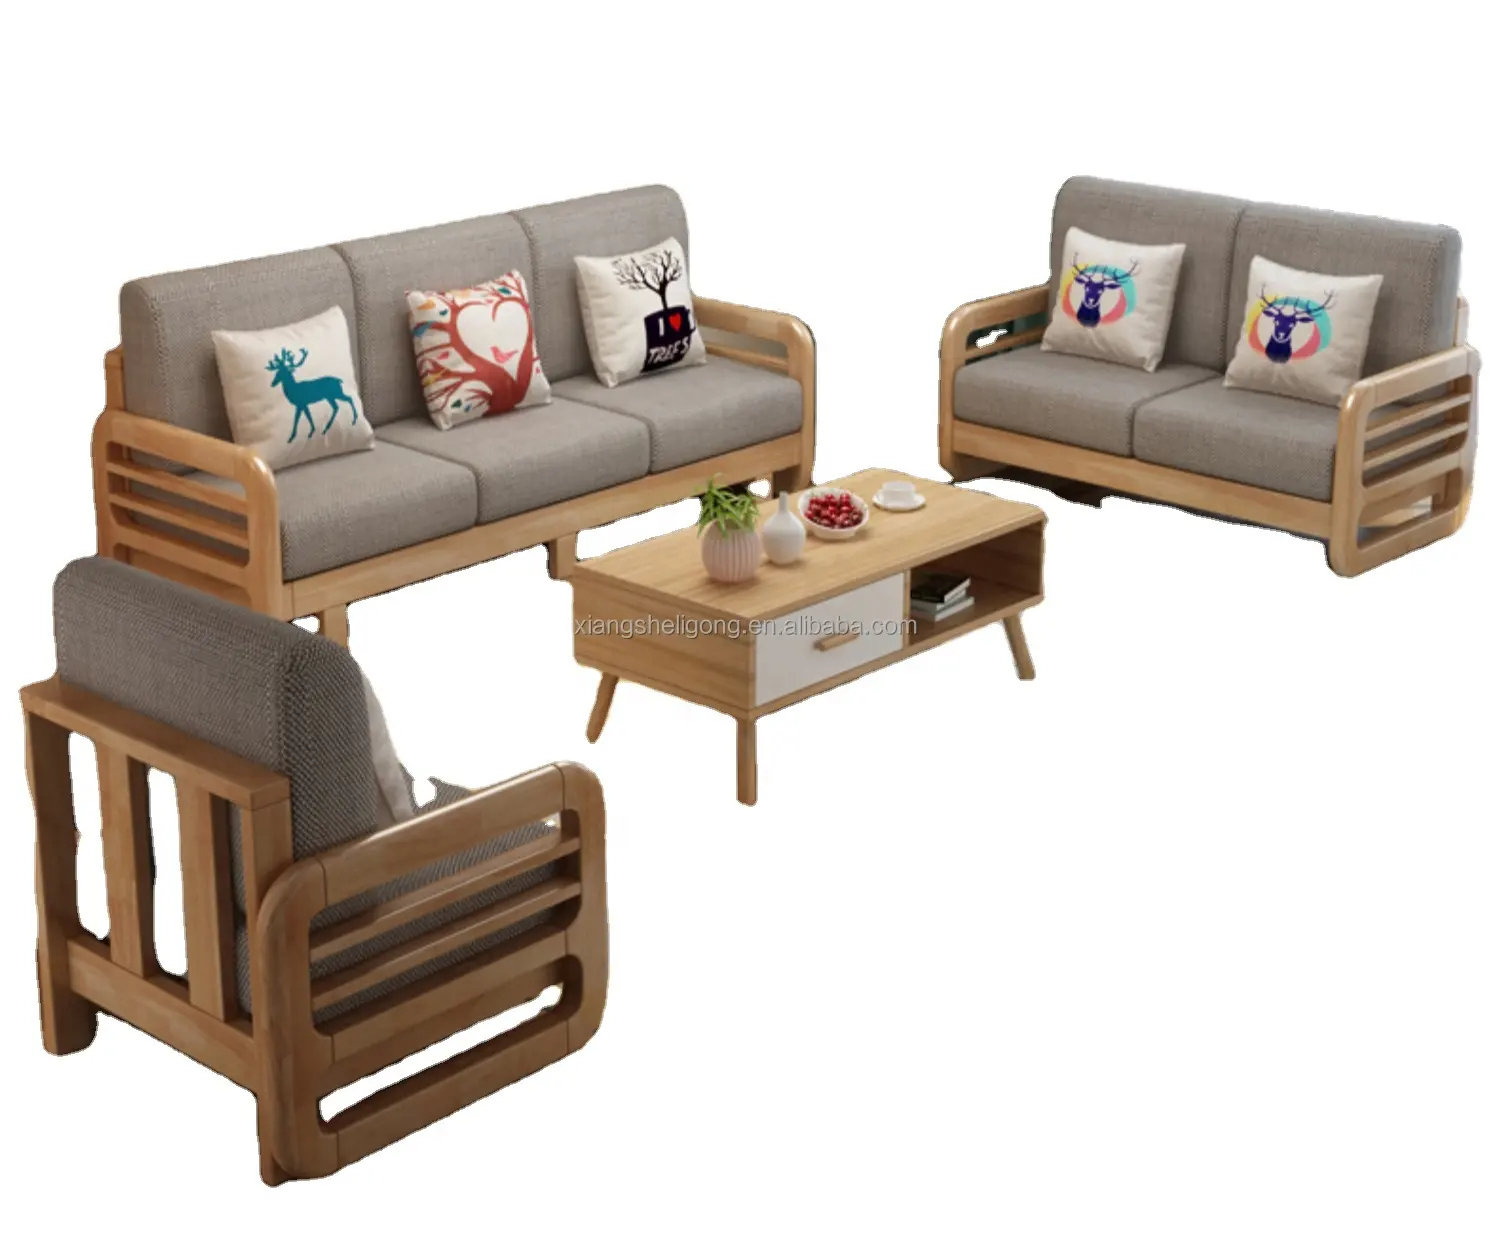 Ensemble canapé d'angle nordique en bois massif, combinaison simple et moderne, pour petit sofa familial, salon, trois personnes, avec broches